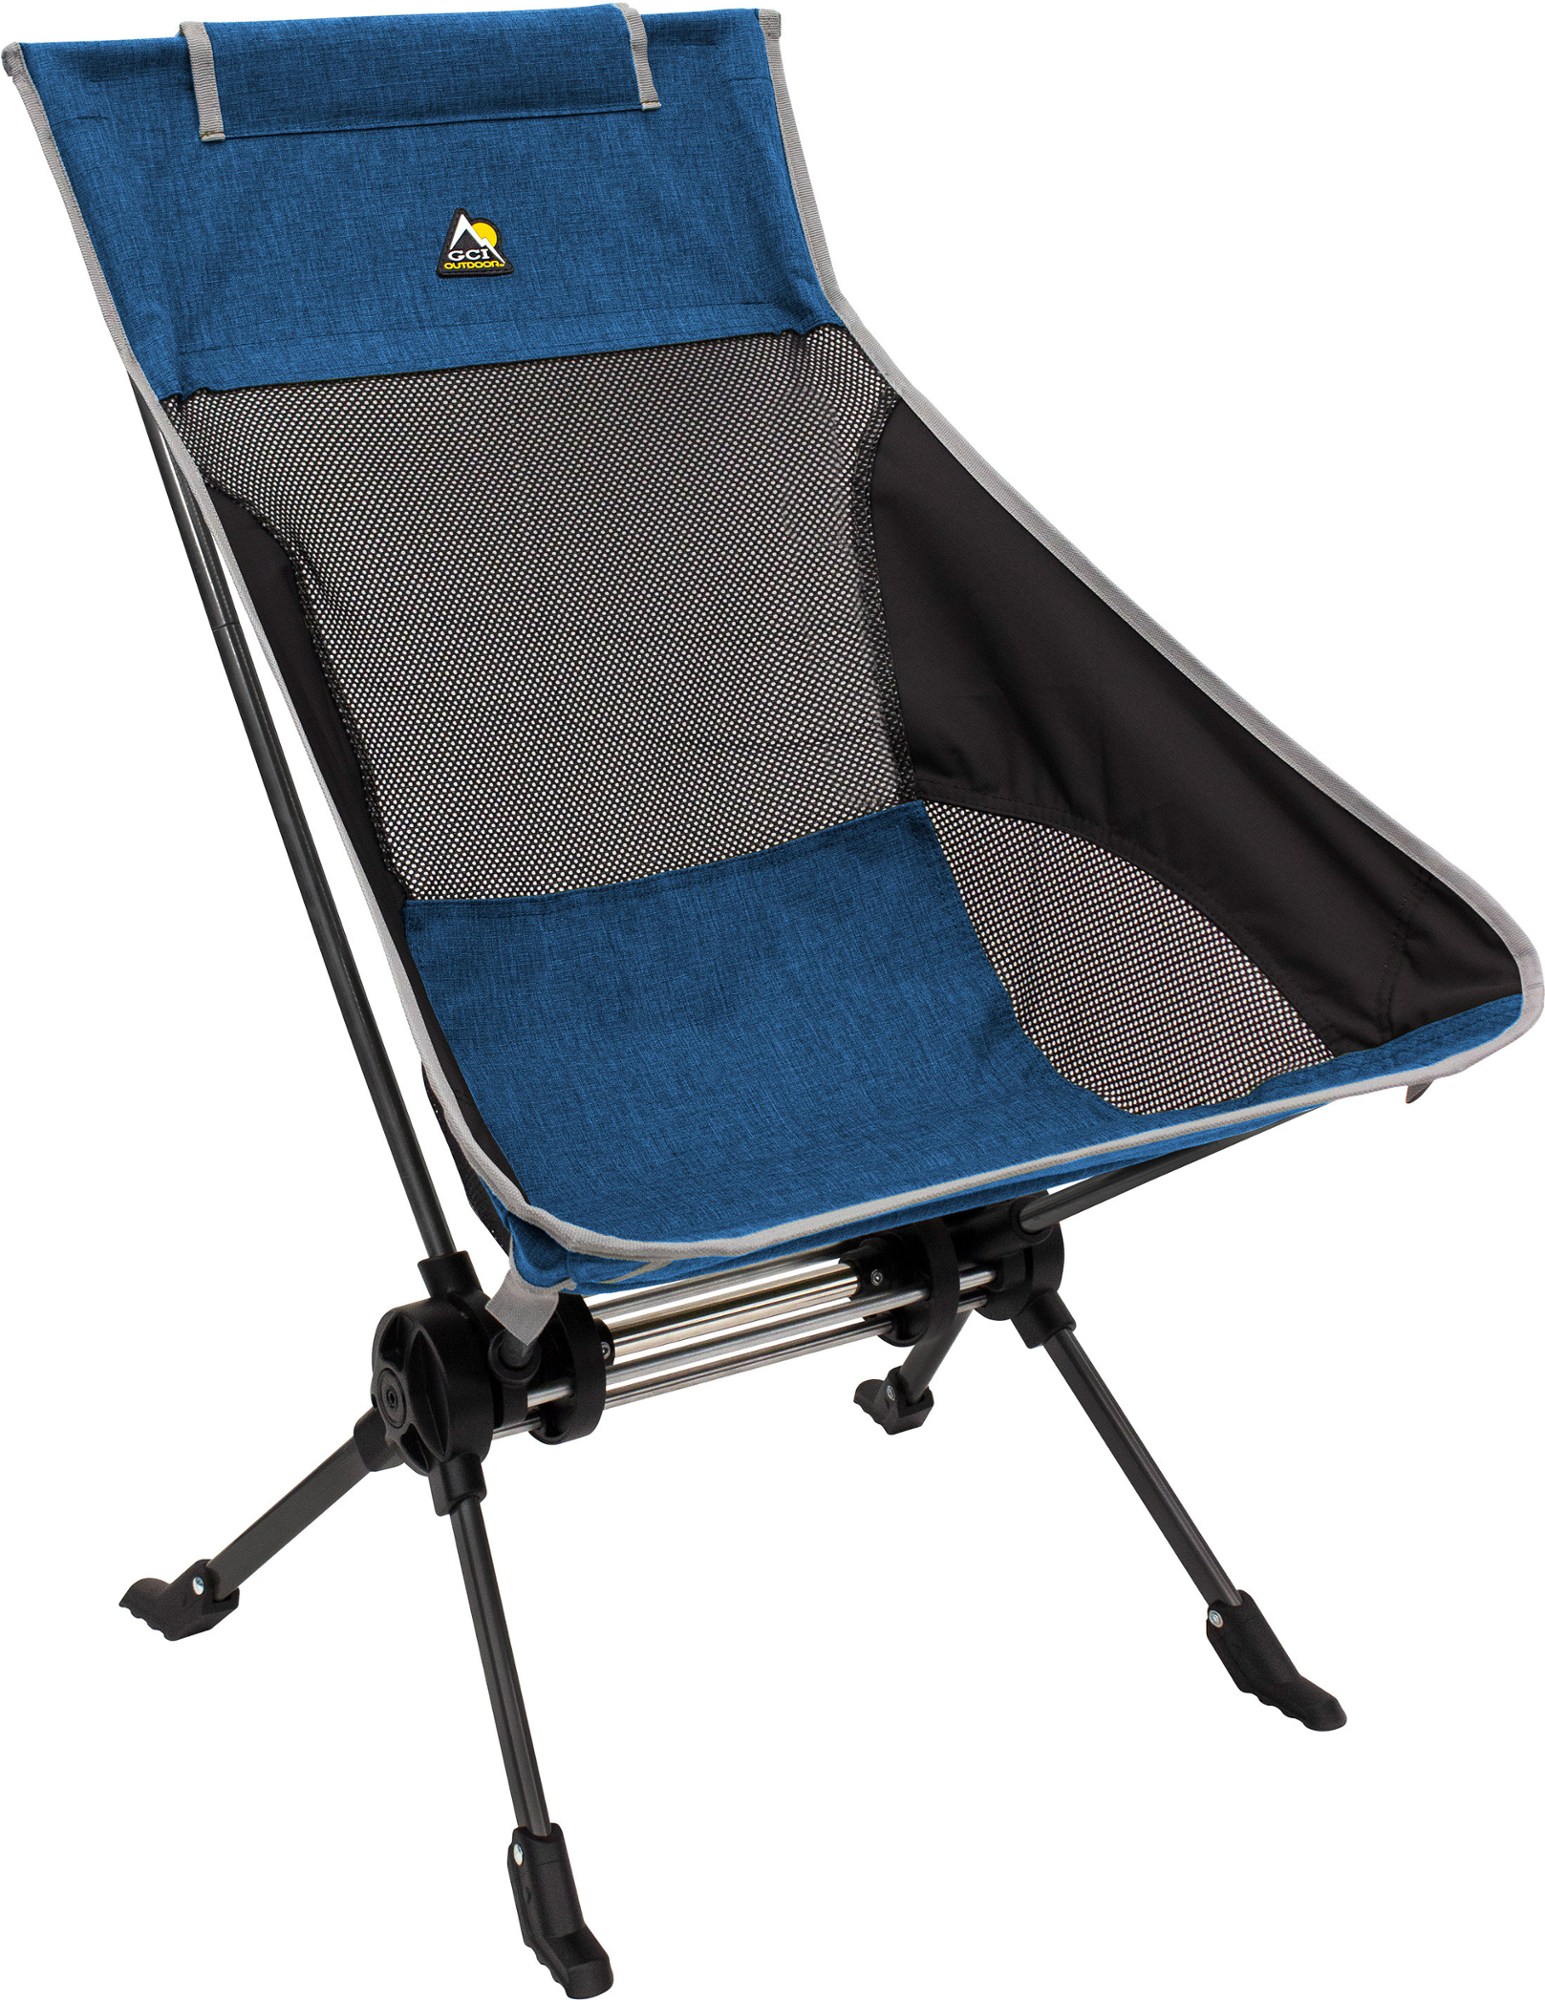 Кресло-качалка ComPack GCI Outdoor, синий кресло качалка с солнцезащитным козырьком gci outdoor серый